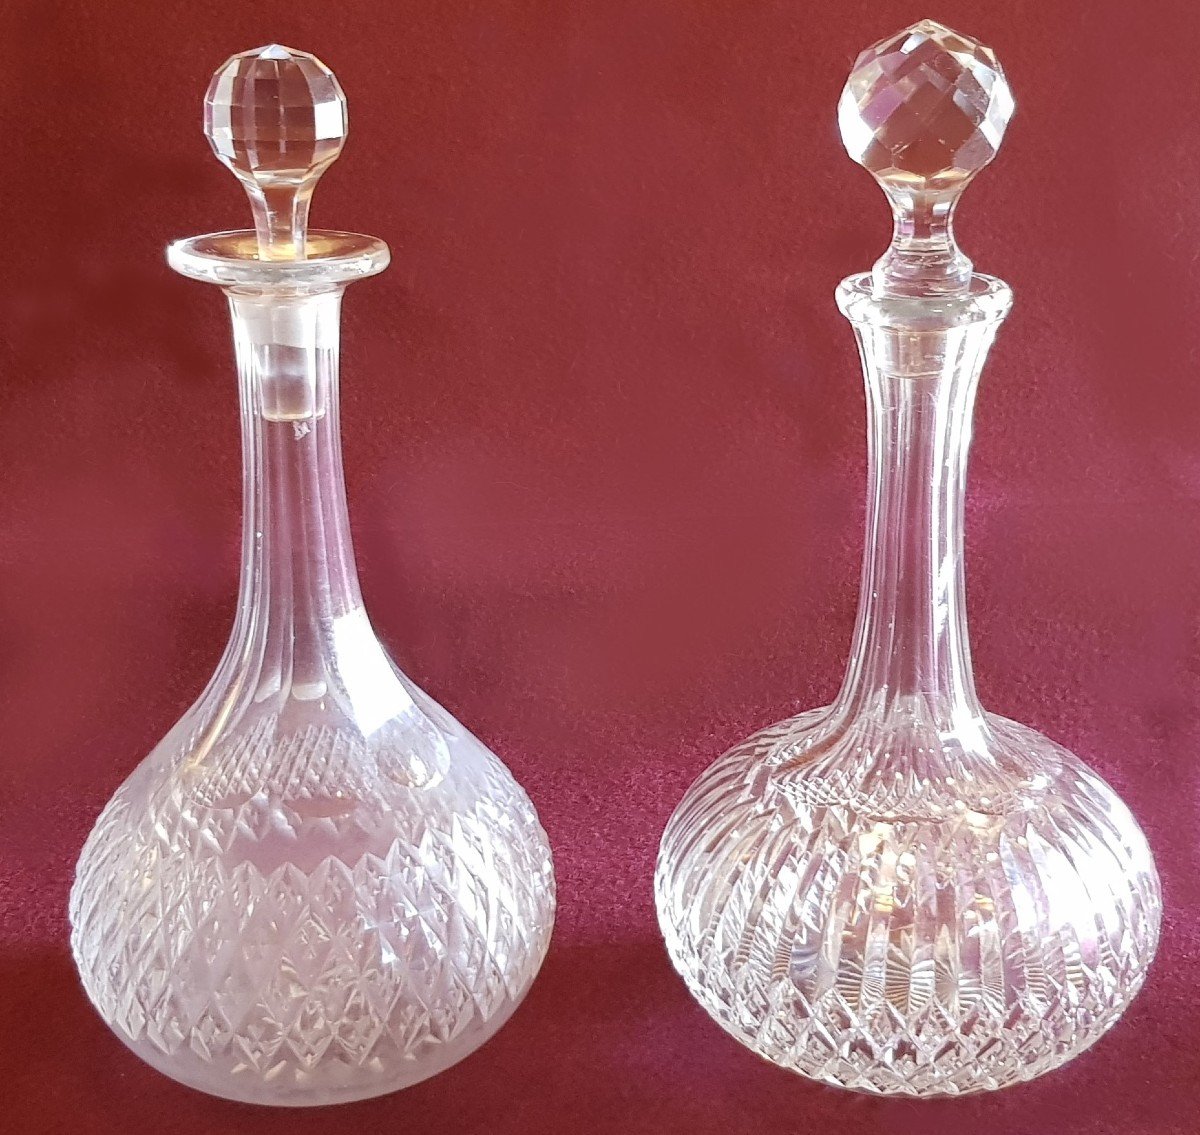 due antiche bottiglie decanter in cristallo di Boemia molato